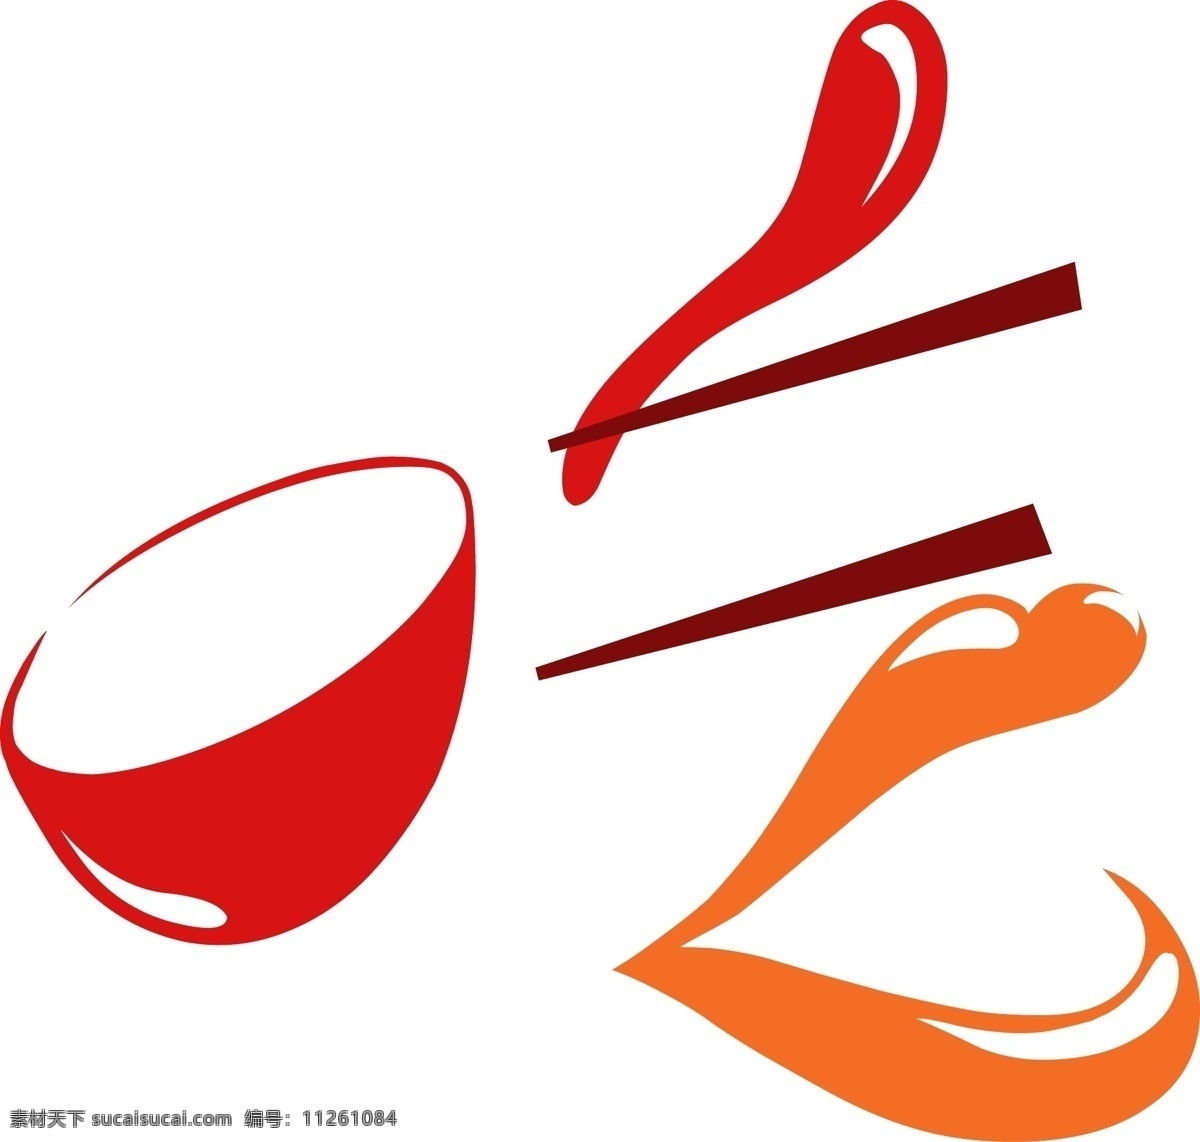 餐饮 logo 快餐 小吃 标志 小吃logo 餐饮logo 快餐logo 吃货logo 小吃标志 餐饮标志 快餐标志 吃货标志 策划 logo设计